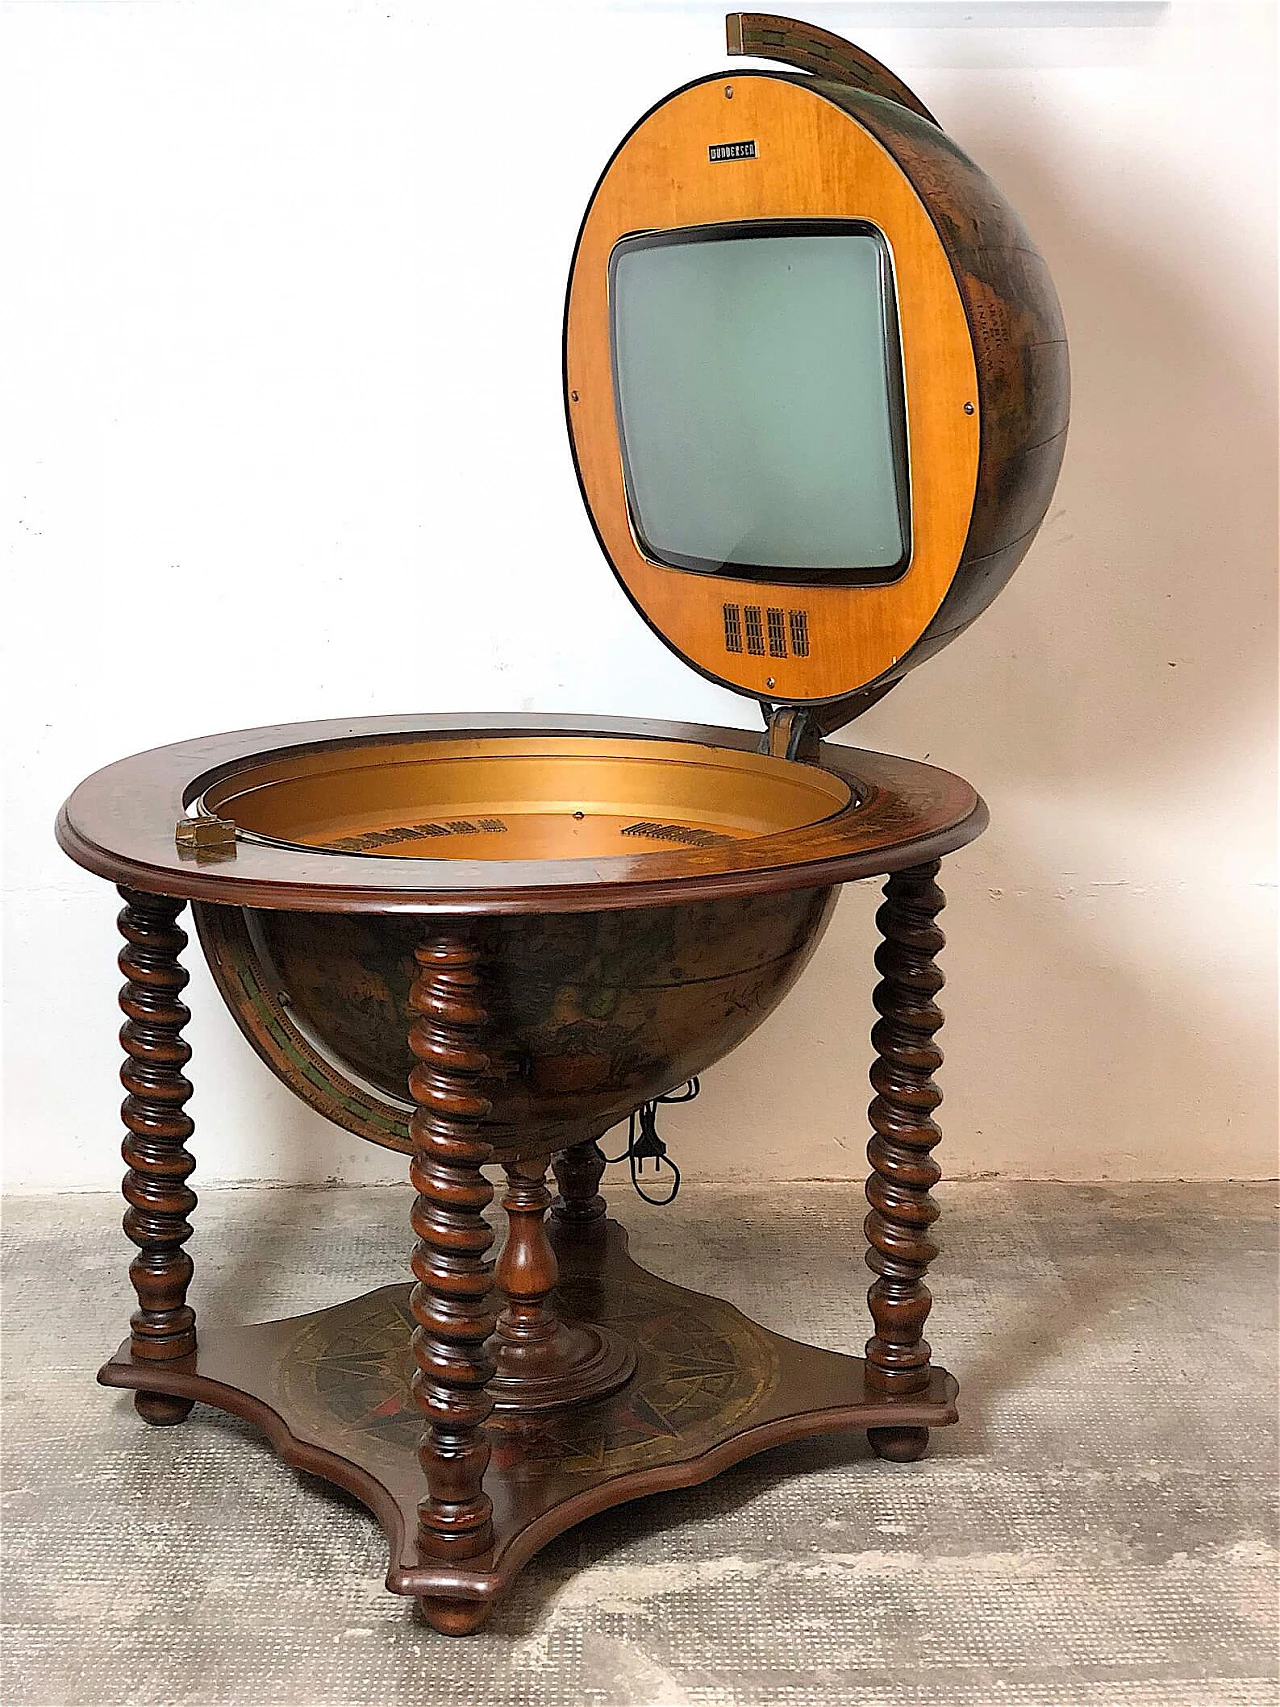 Wundersen globe-shaped television set, 1967 1367119